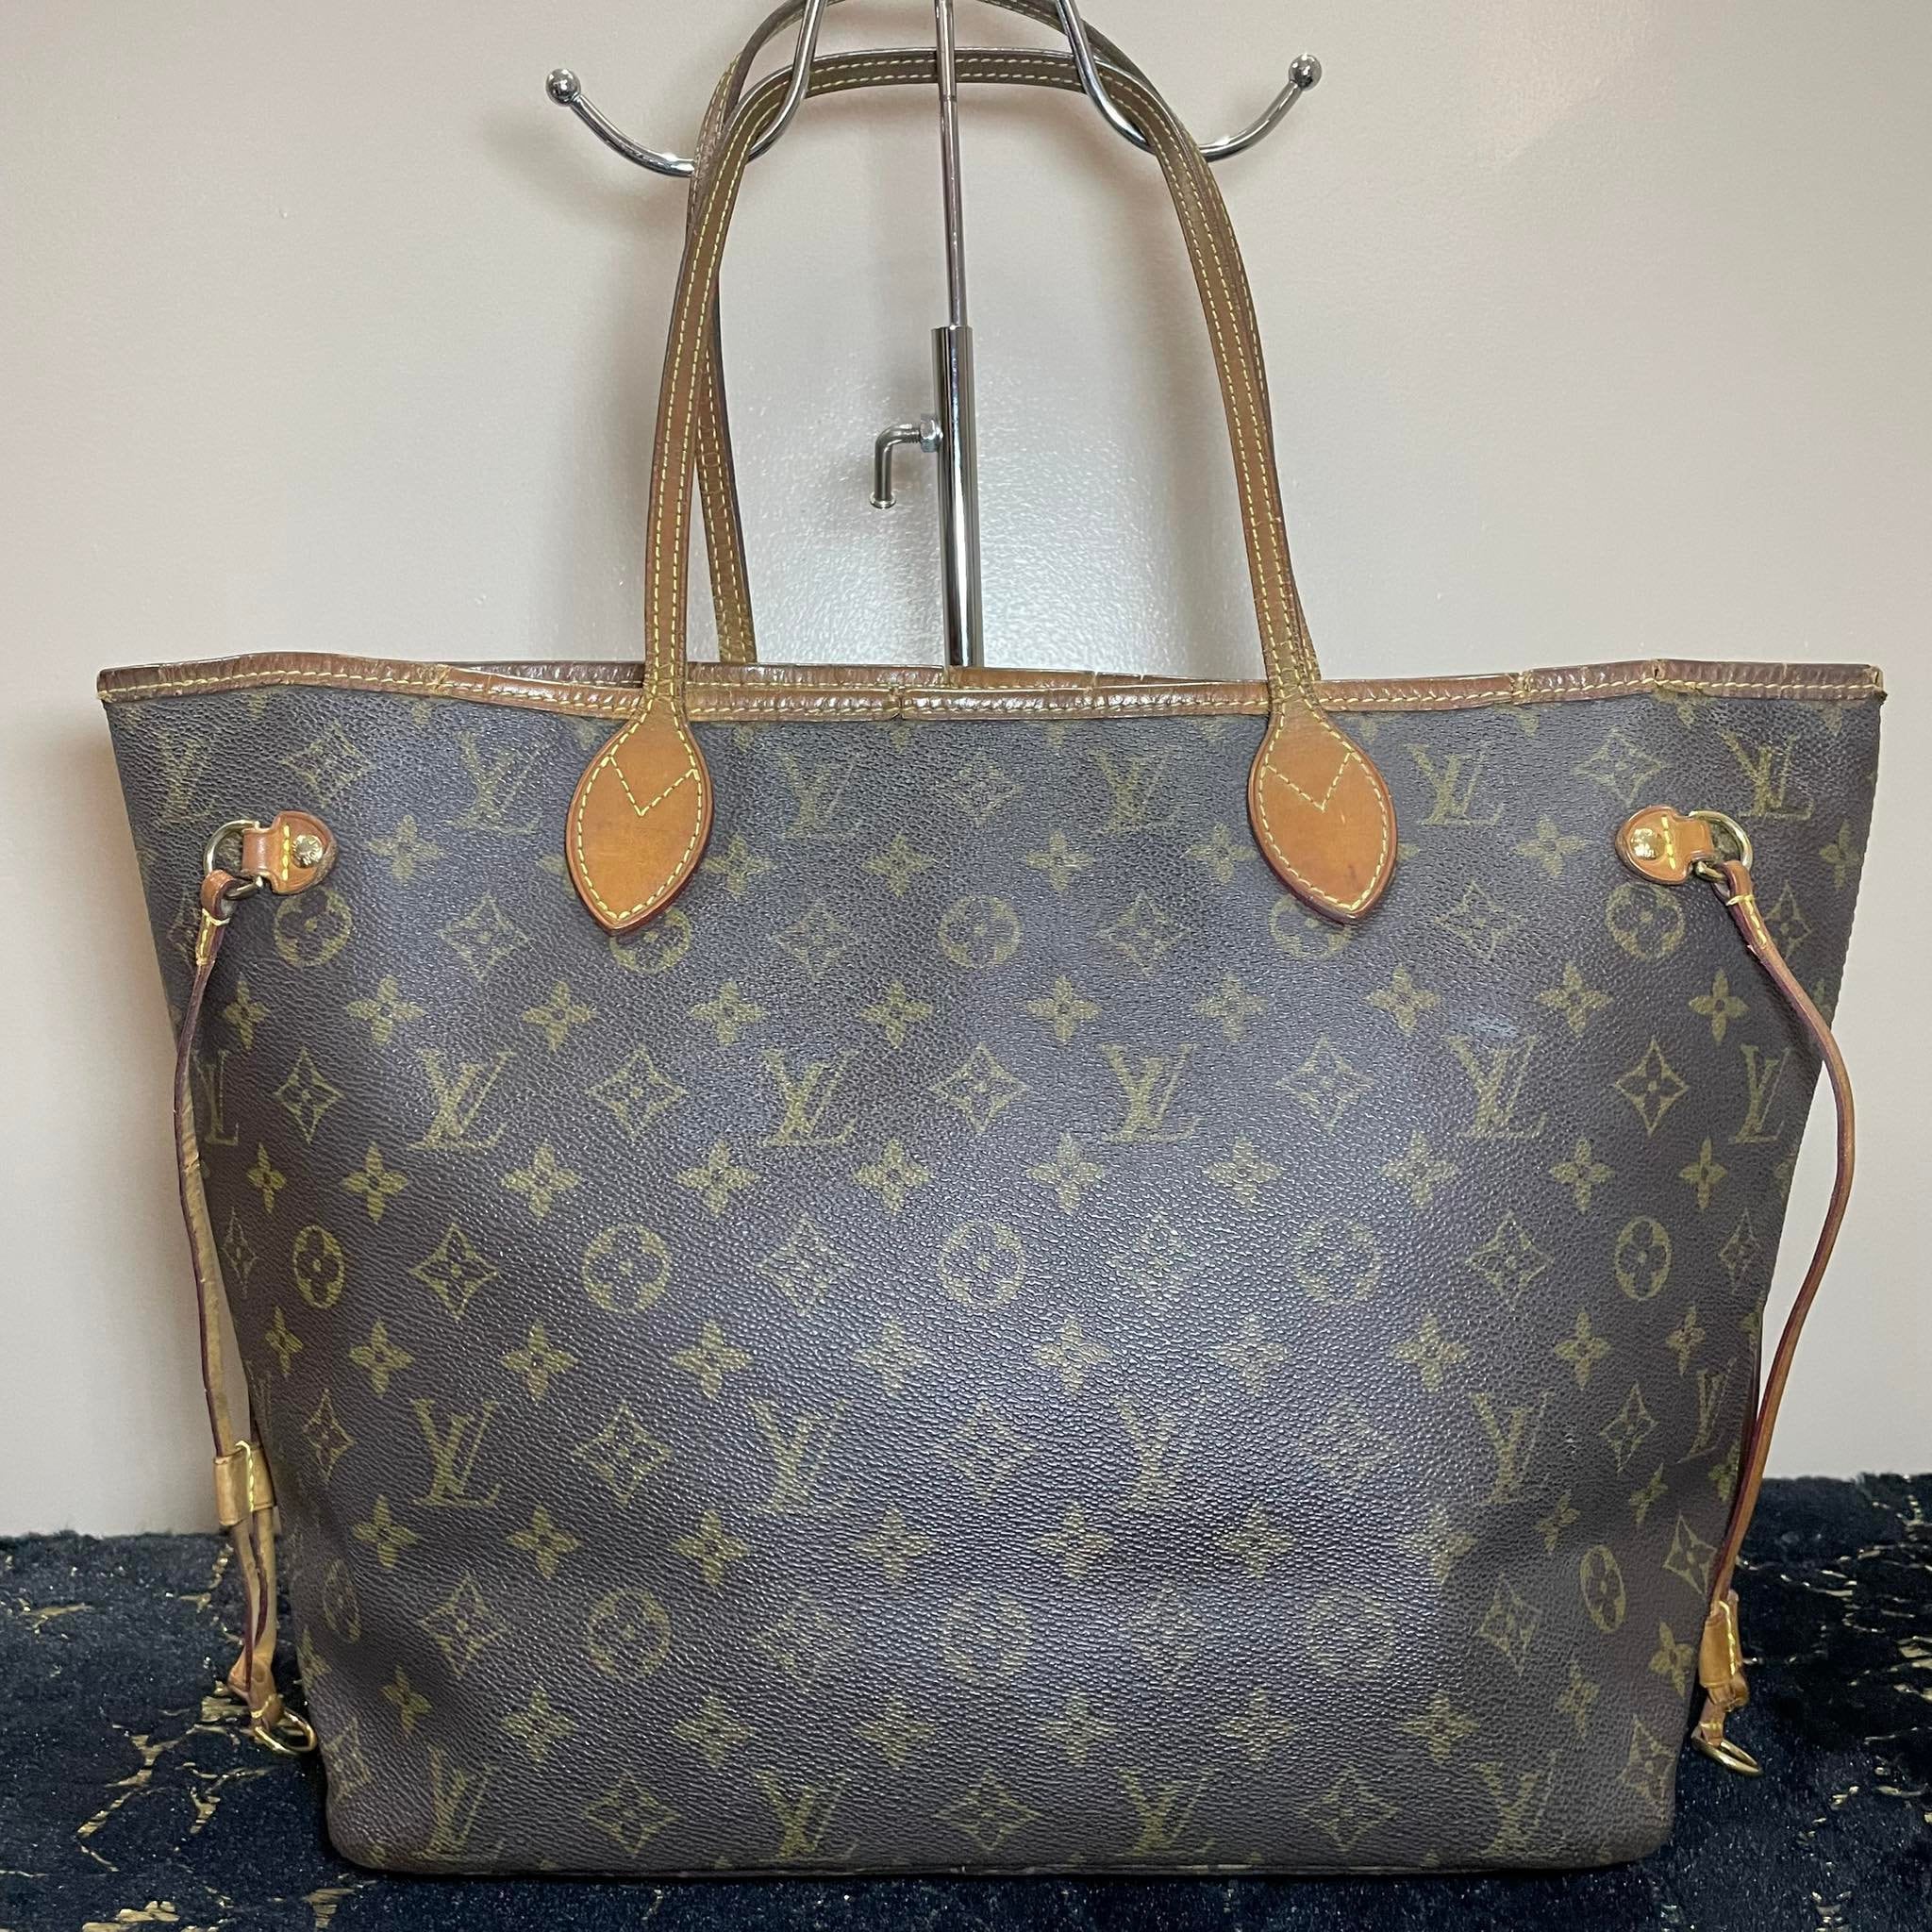 Authentic Louis Vuitton Monogram Speedy 30 Hand Bag Purse VI 1900 Vintage